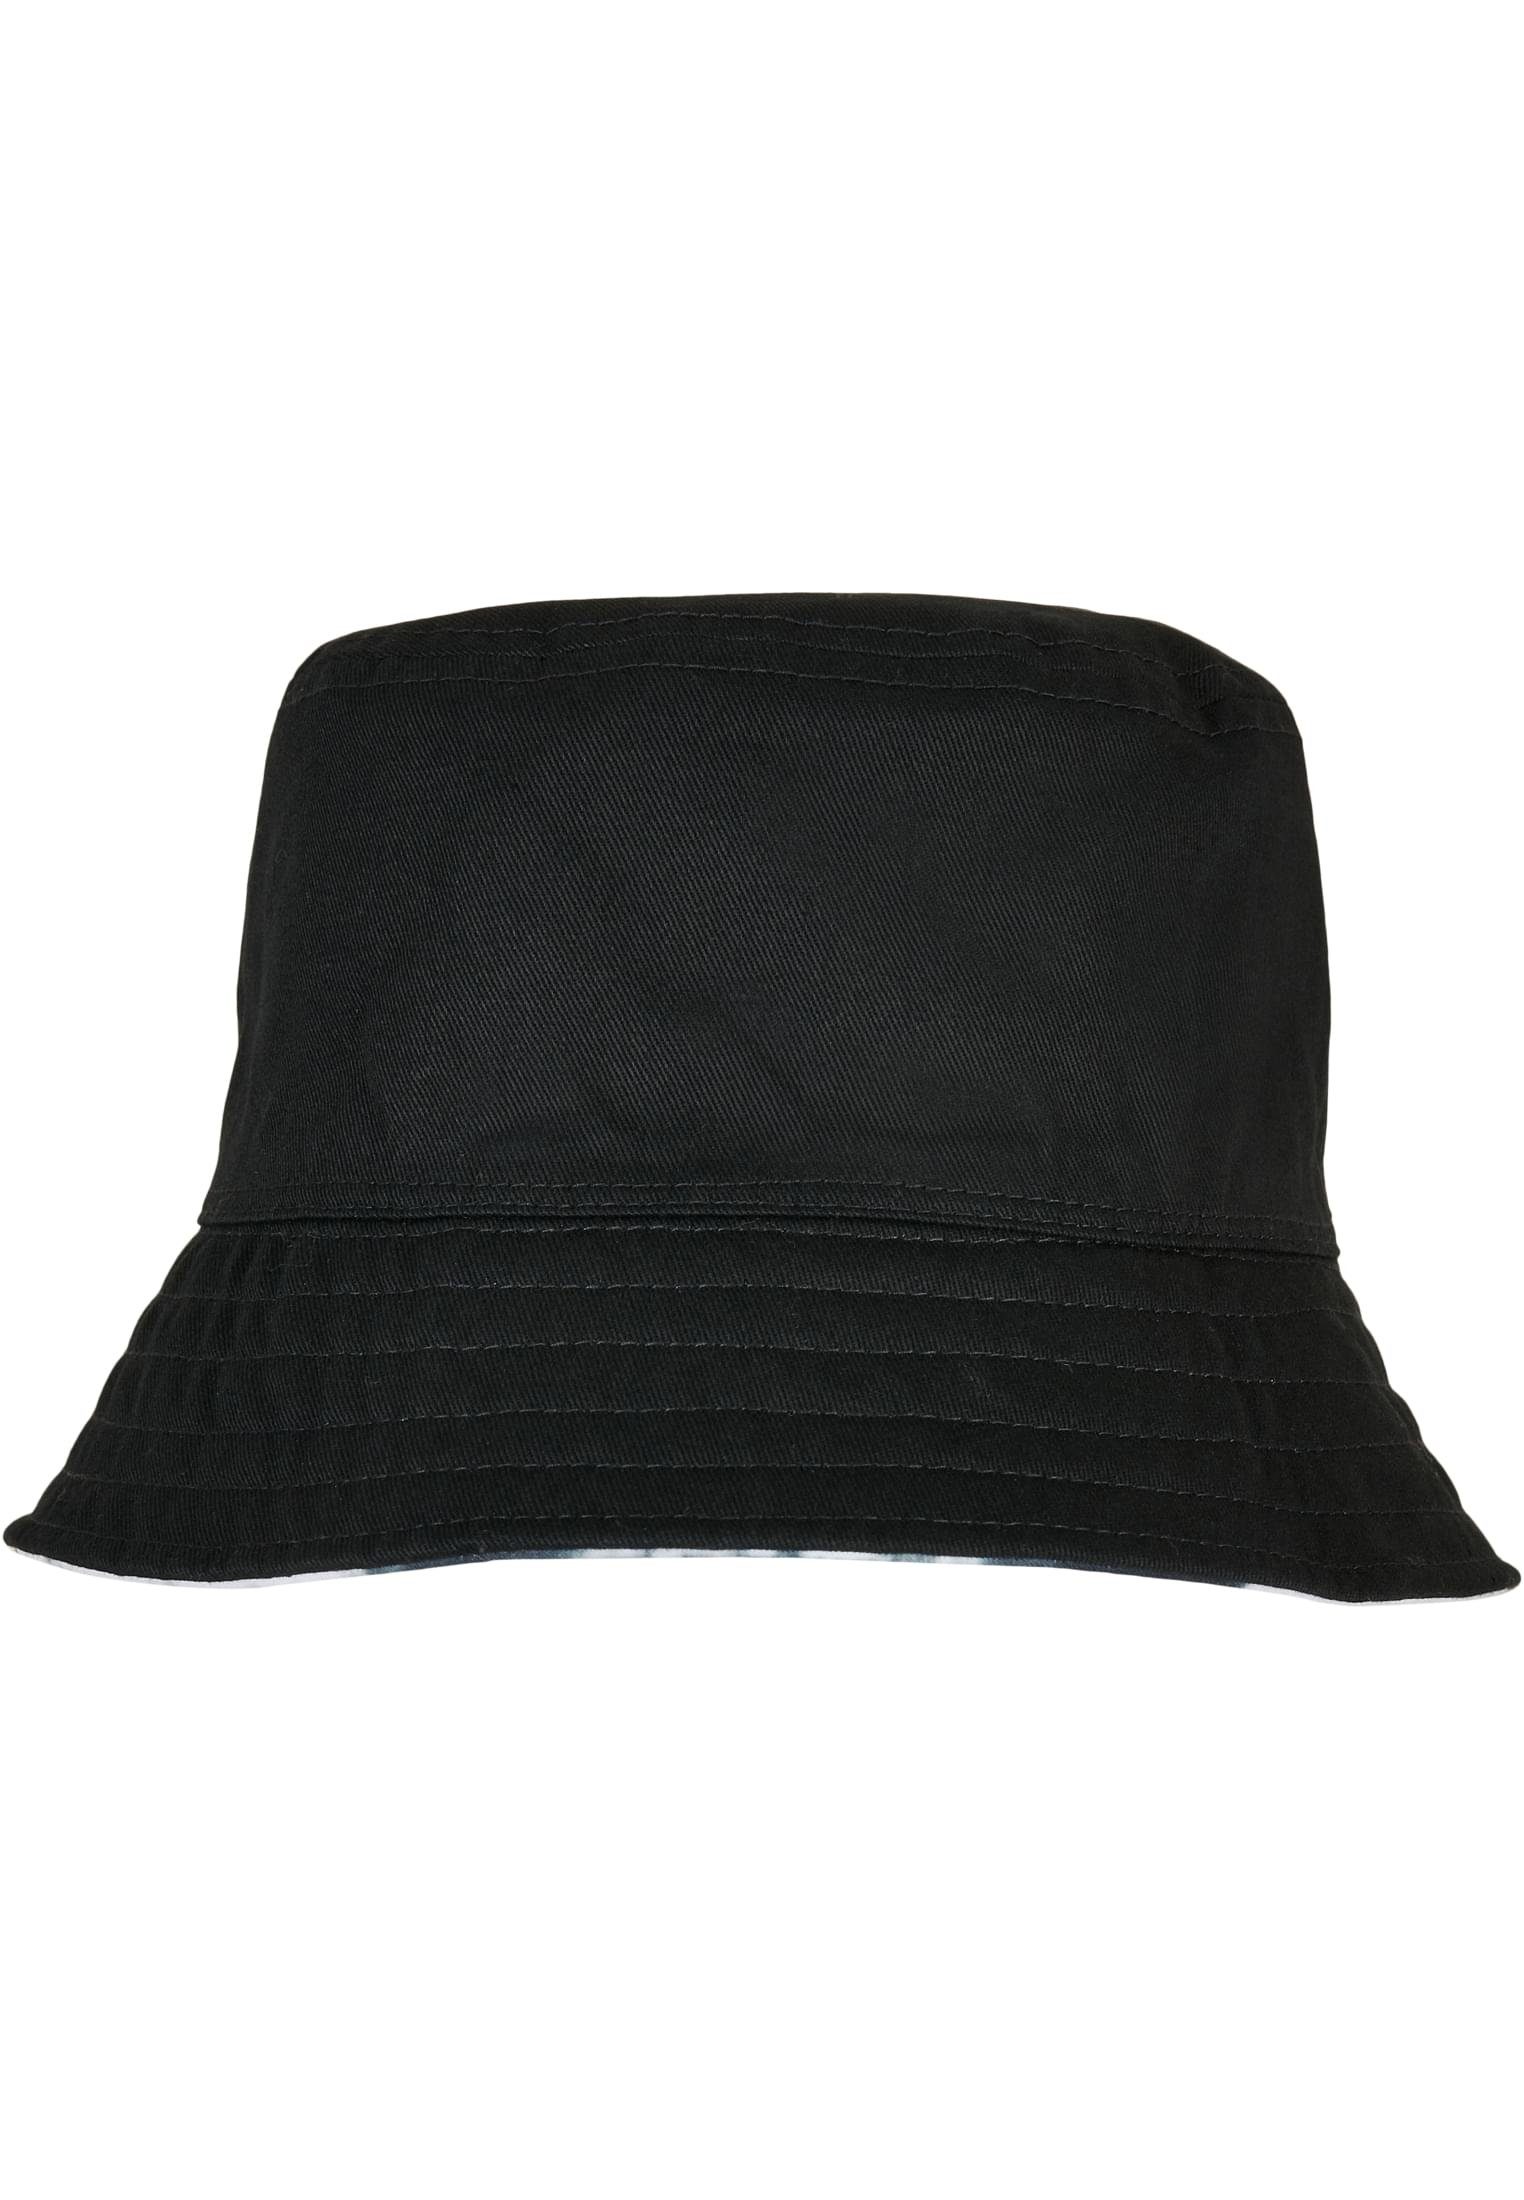 Cap Accessoires Dye Hat Batik Reversible Flexfit Bucket Flex